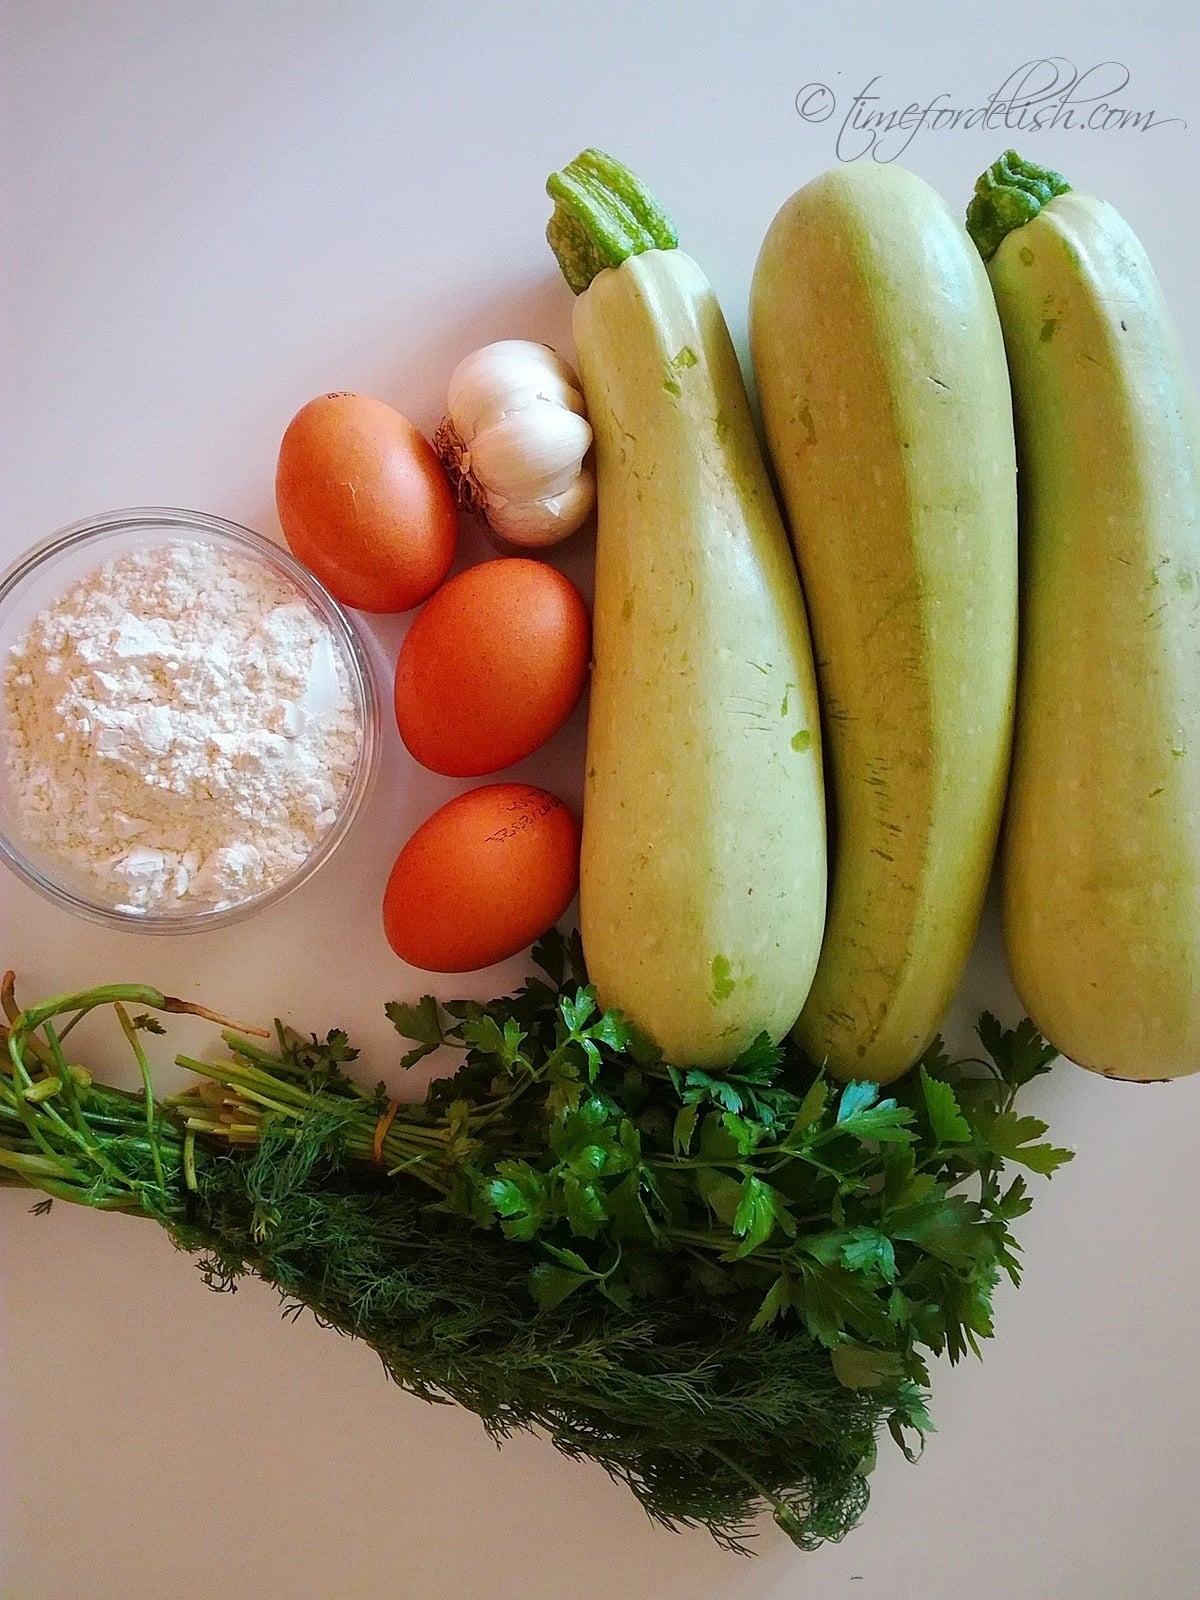 fried zucchini ingredients